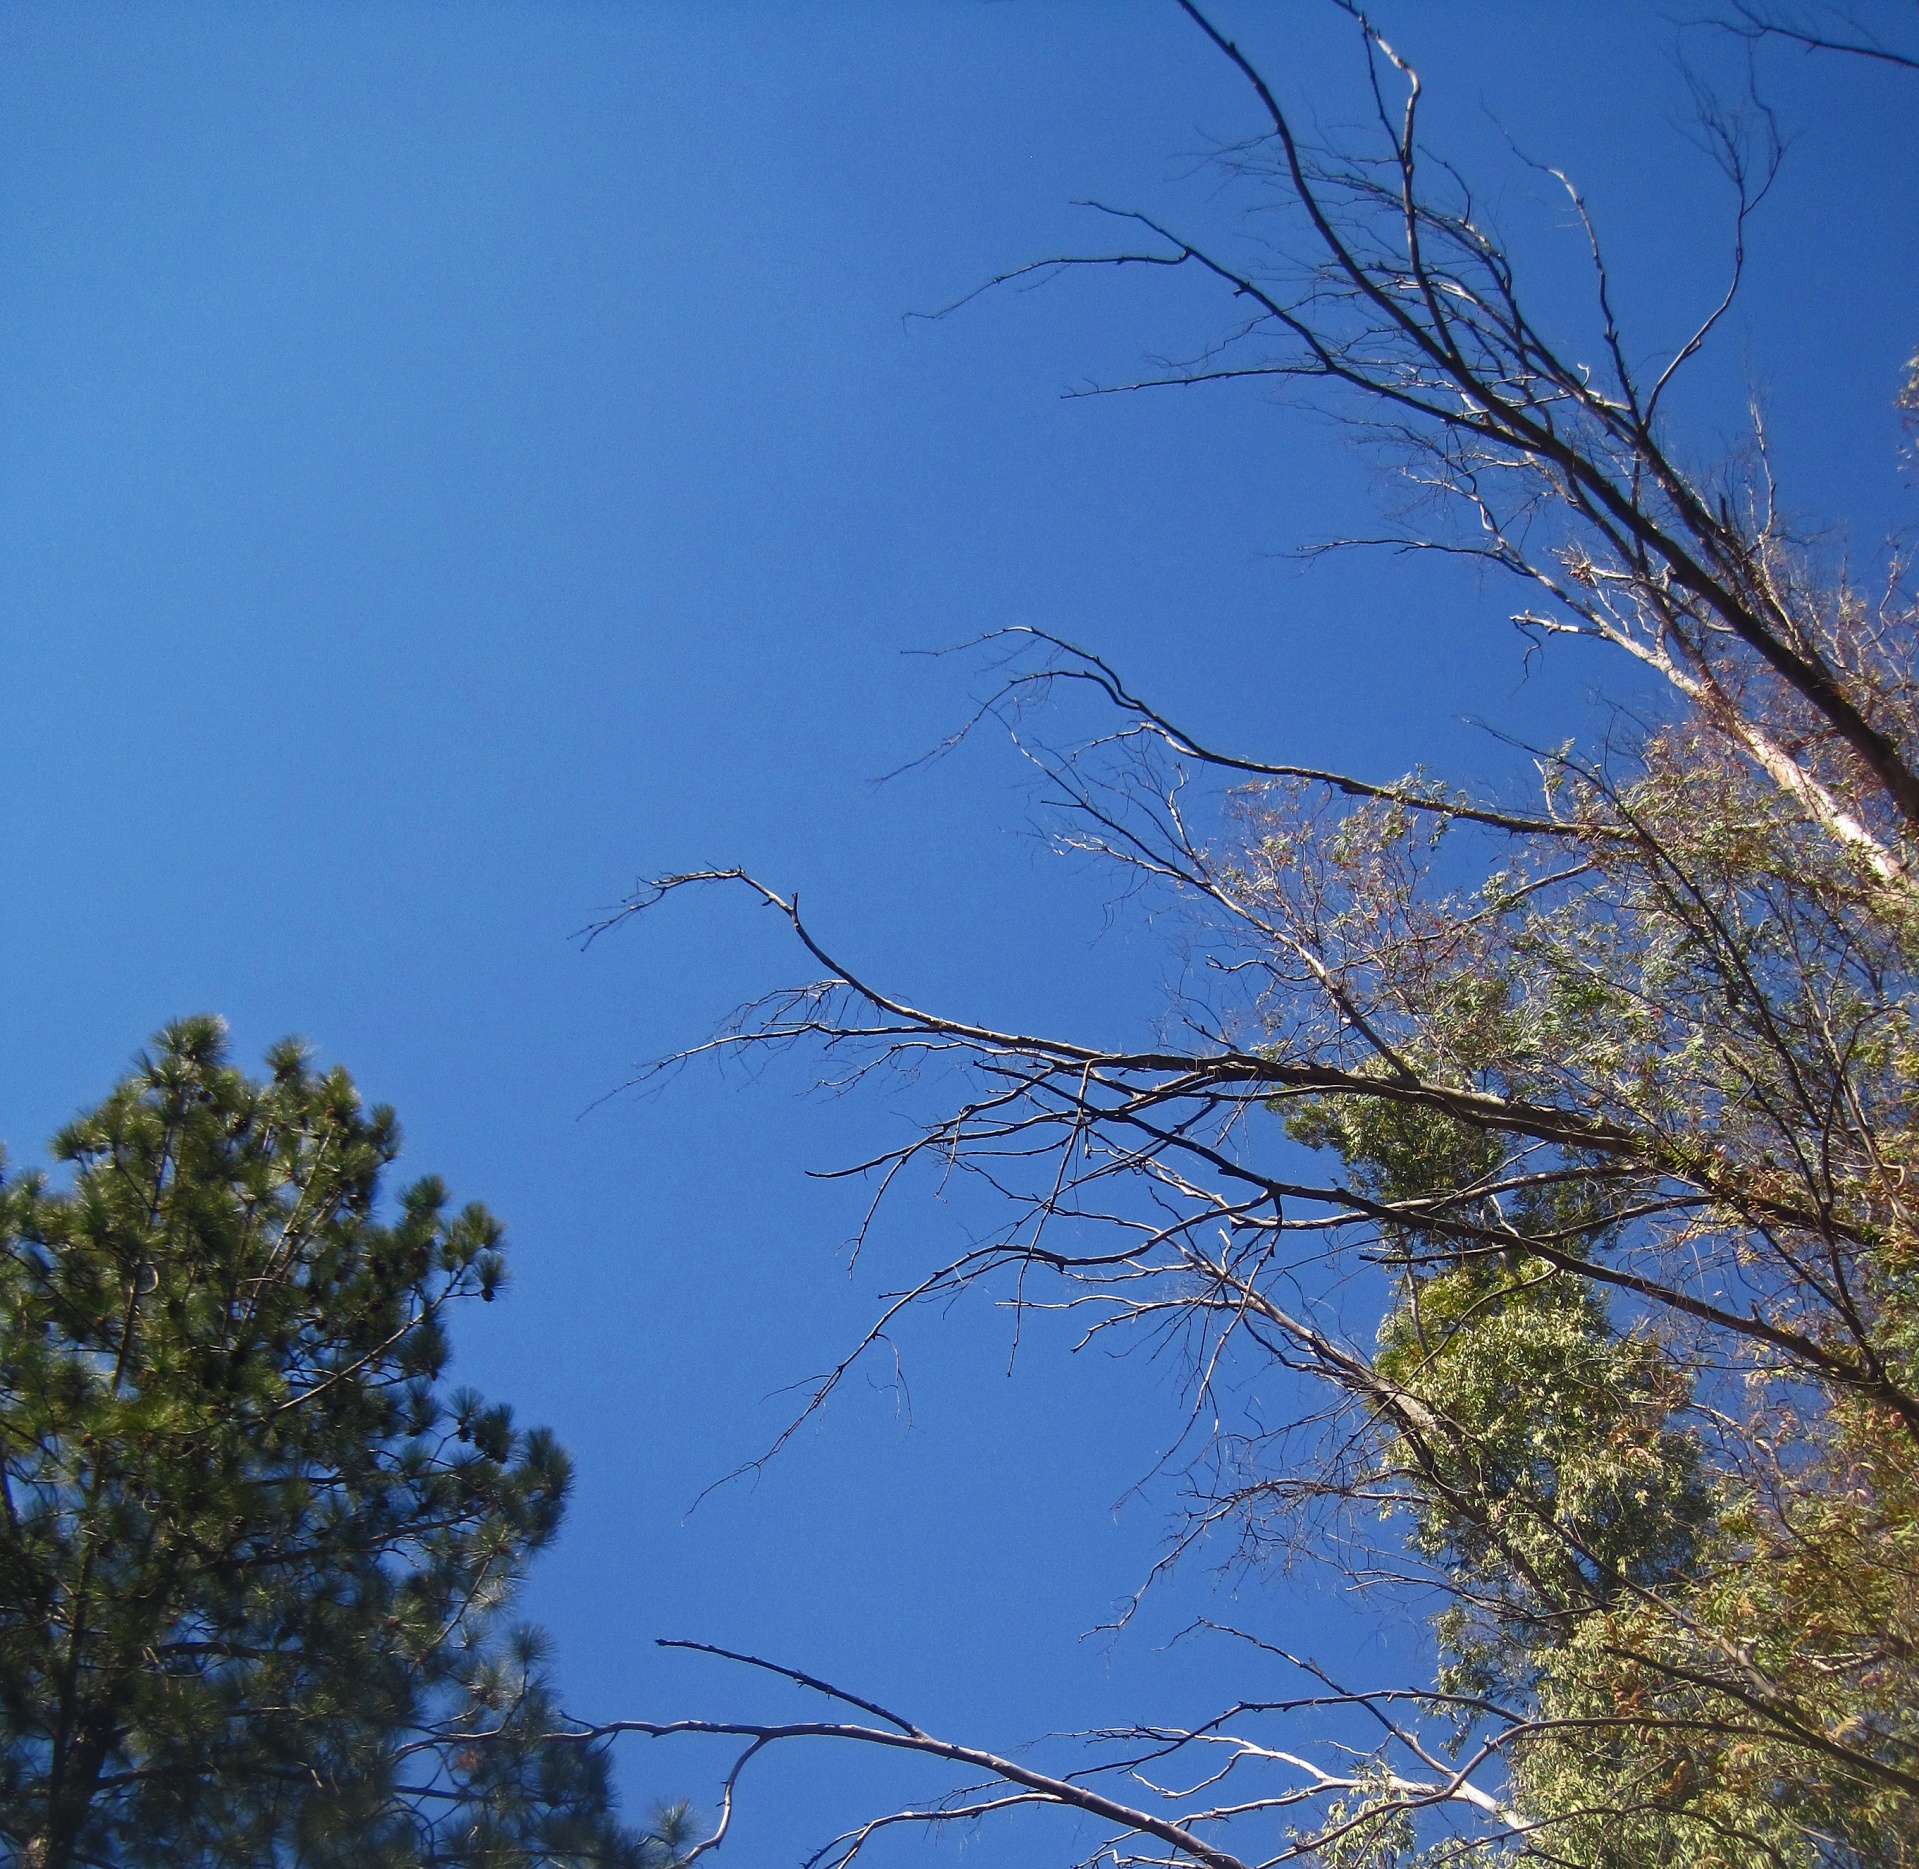 Toppen van bomen tegen blauwe hemel